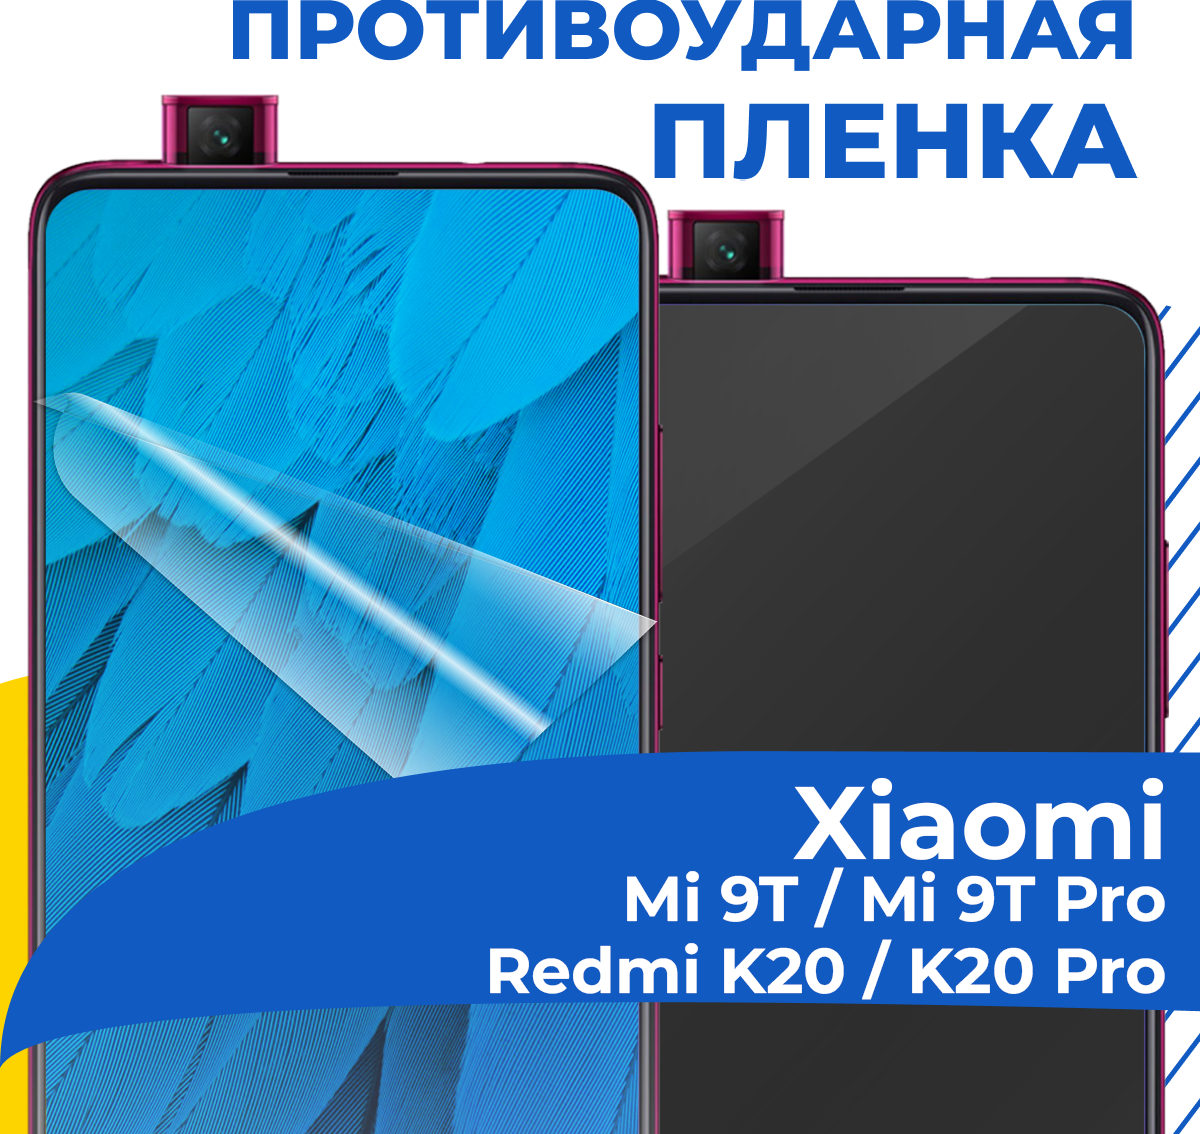 Комплект 2 шт. Гидрогелевая пленка для телефона Xiaomi Mi 9T / Mi 9T Pro / Redmi K20 / K20 Pro / Защитная пленка на смартфон Сяоми Ми 9Т / Ми 9Т Про / К20 / К20 Про